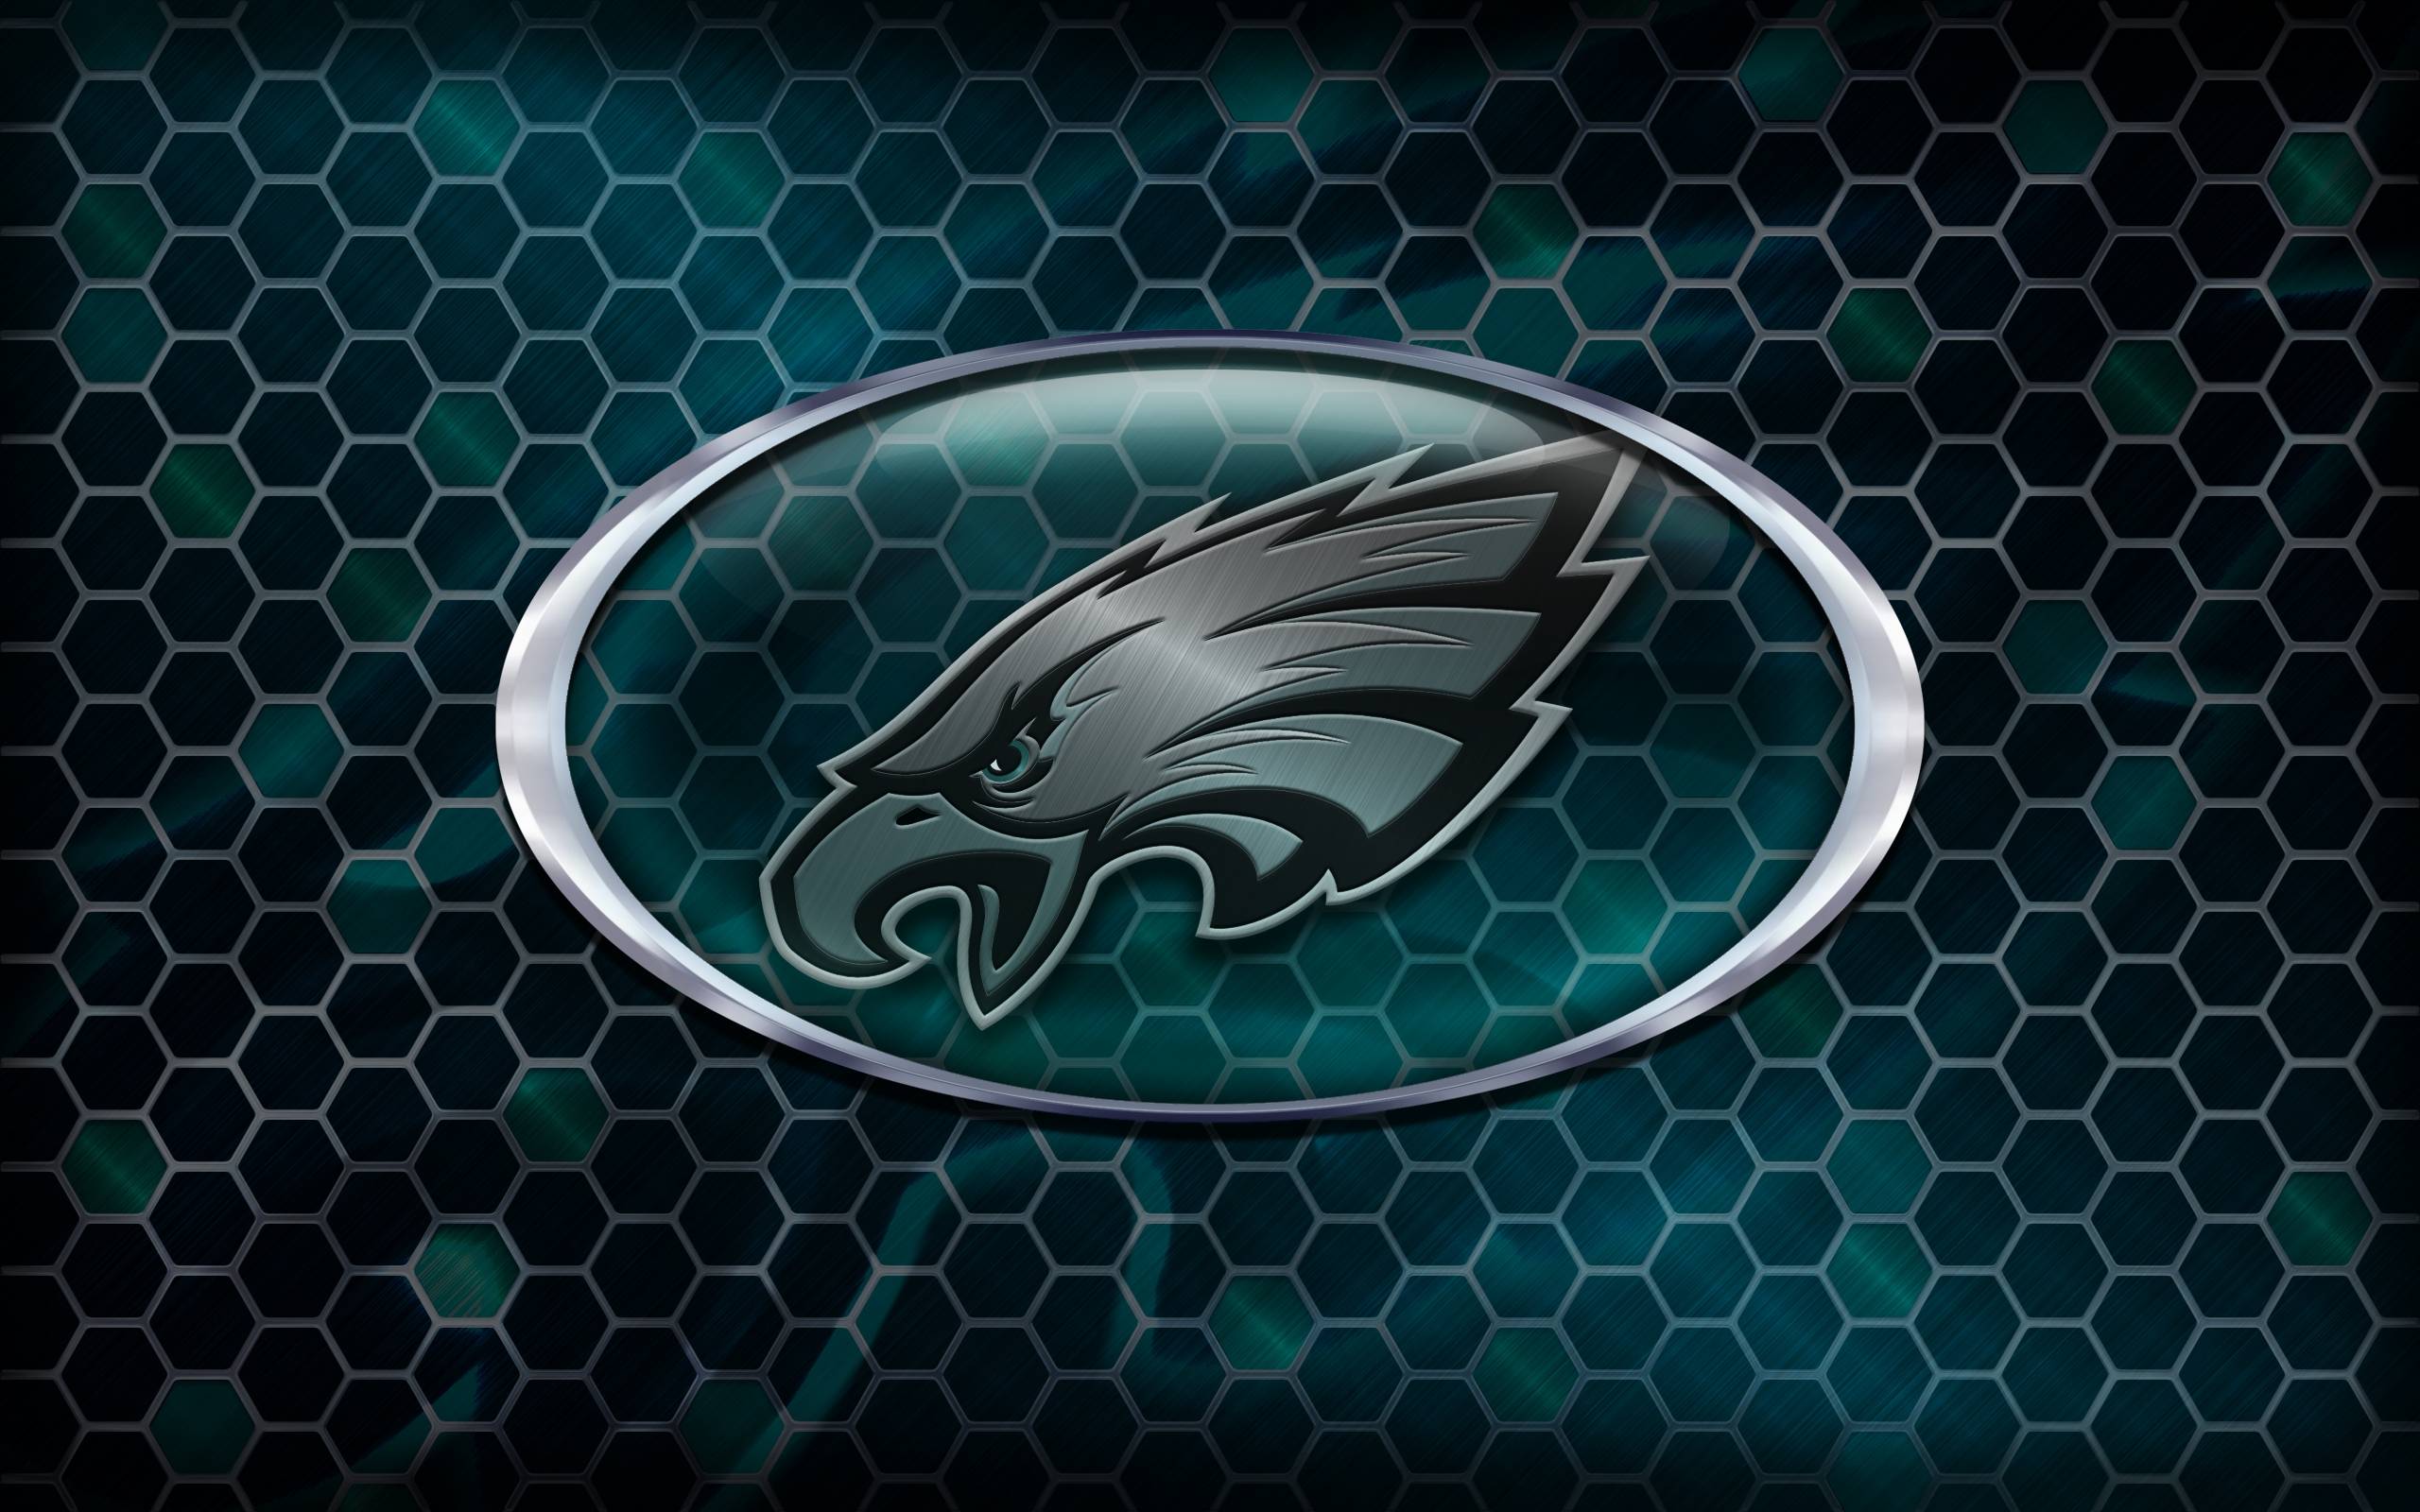 Philadelphia Eagles 2014 NFL Logo Wallpaper Wide or HD. Sports